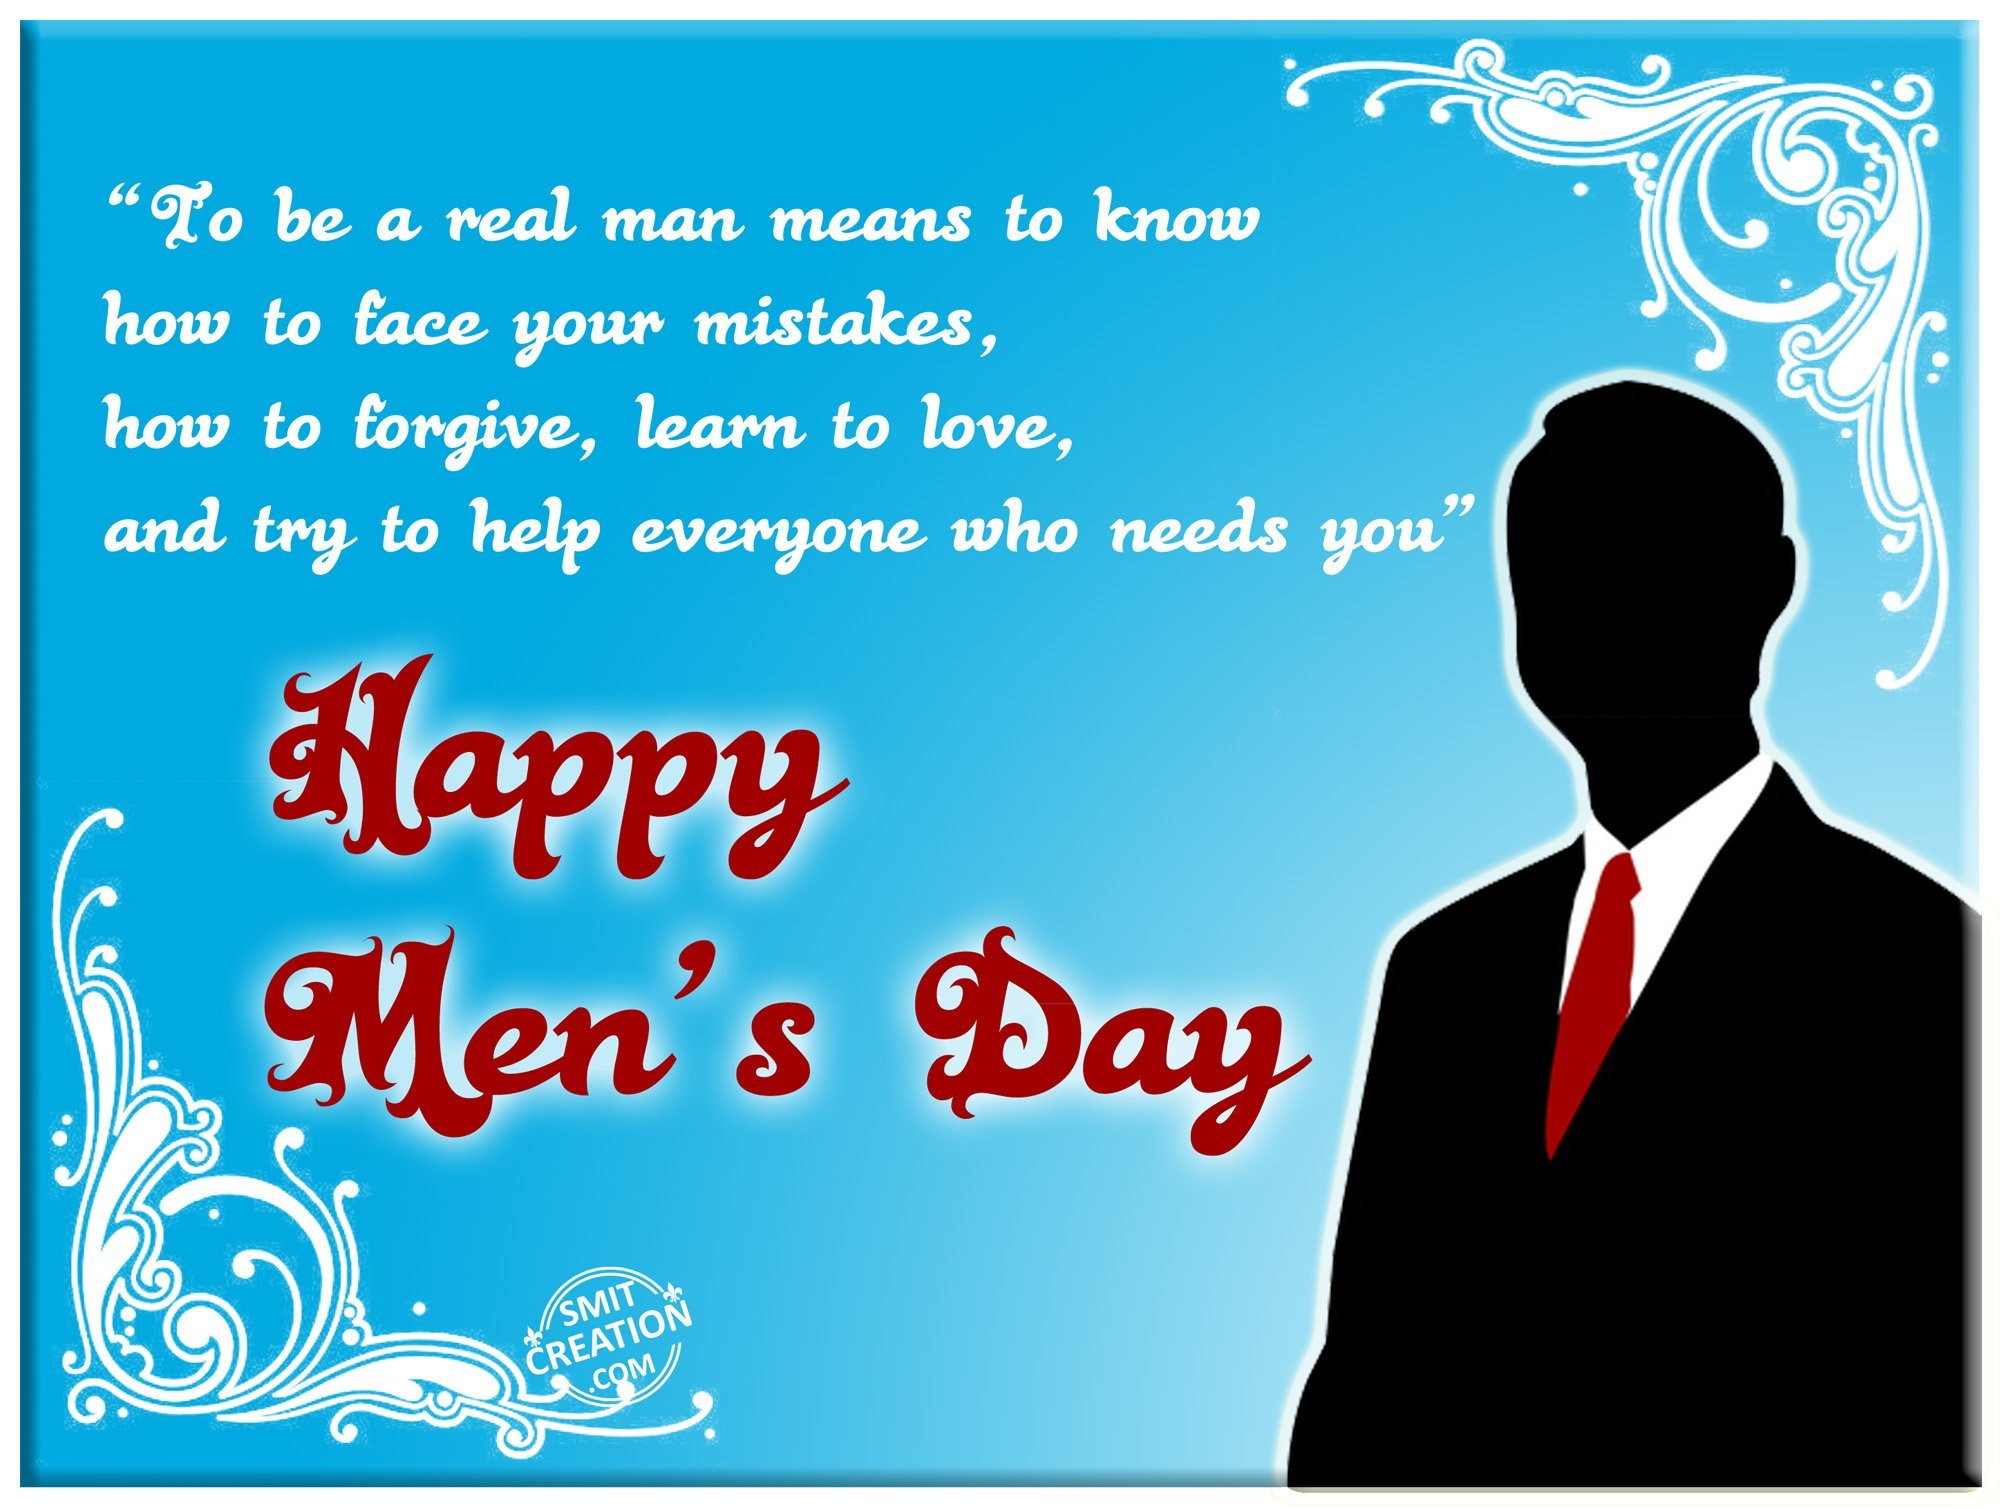 happy Men’s Day quote